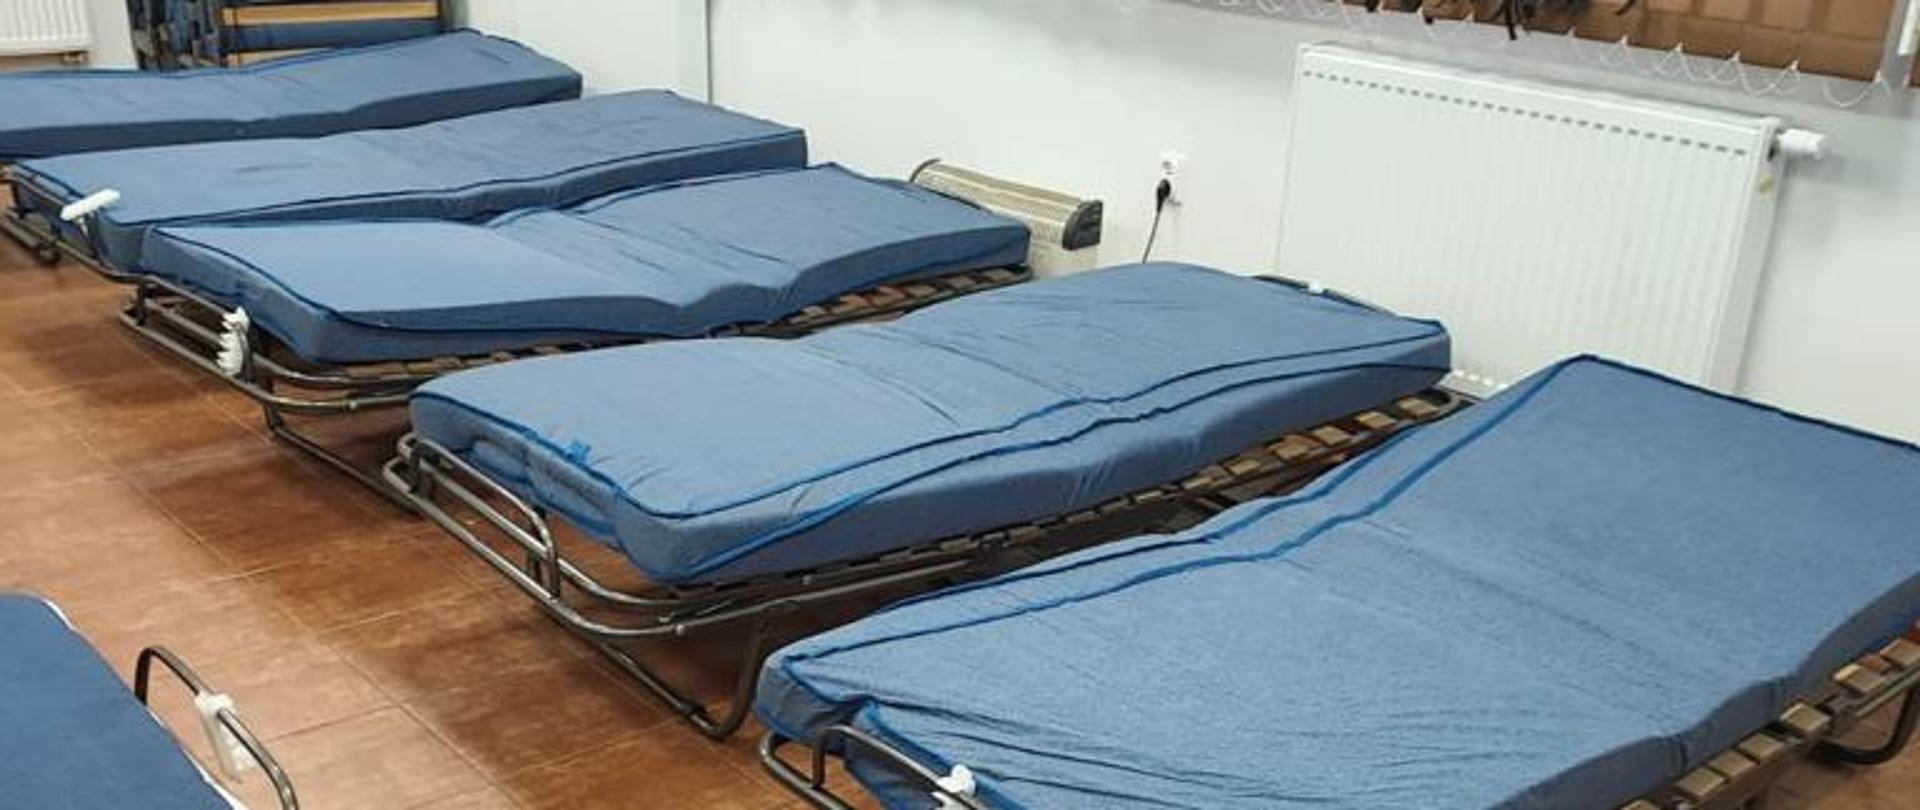 Na zdjęciu widoczne są łóżka polowe przygotowane dla uchodźców.